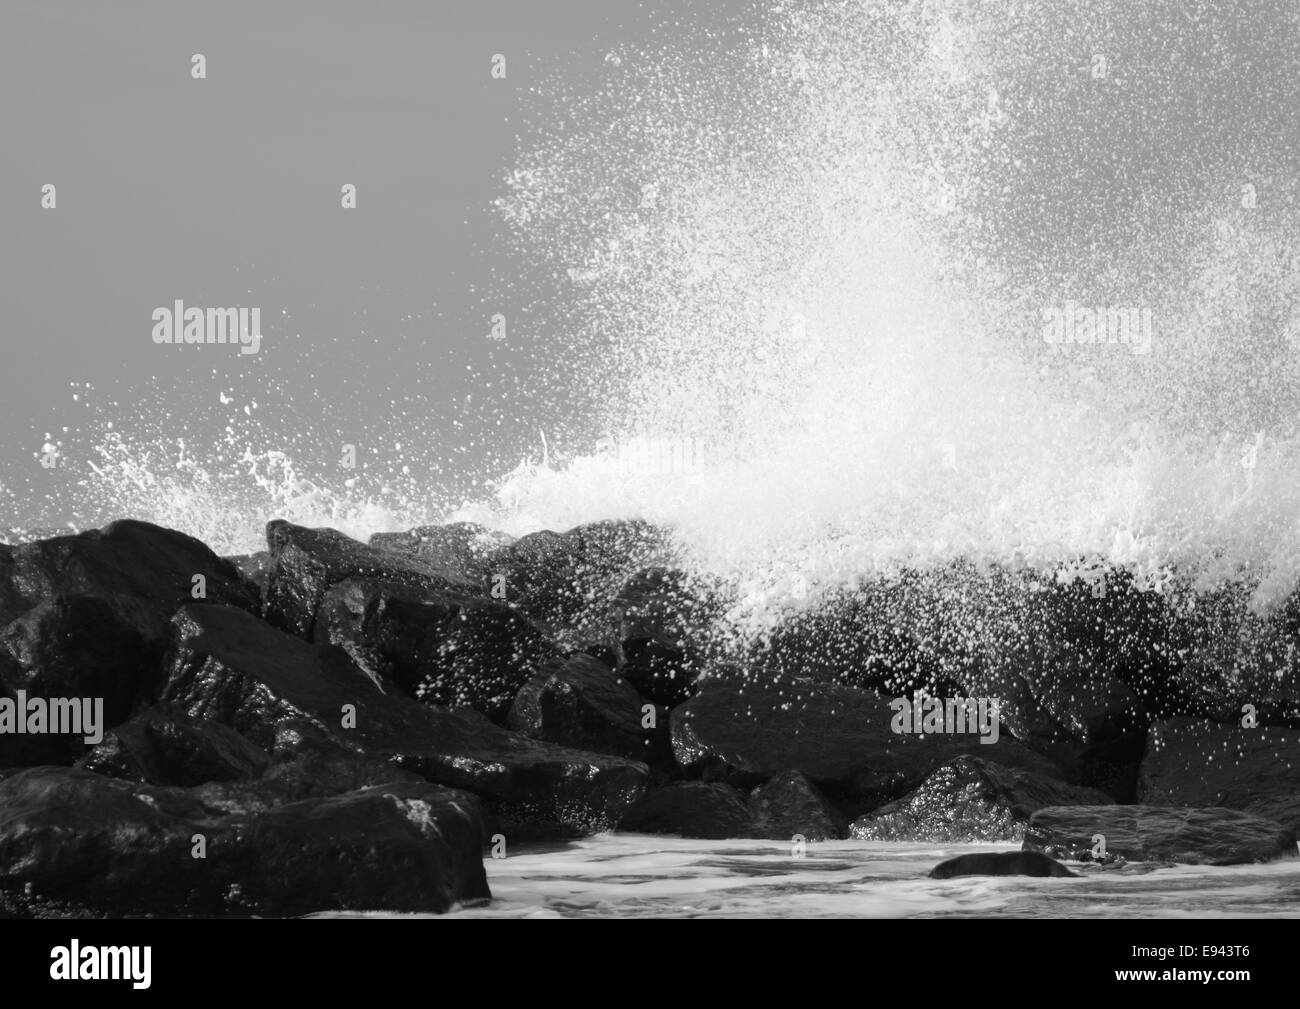 Crashing waves against black rocks at coast Stock Photo